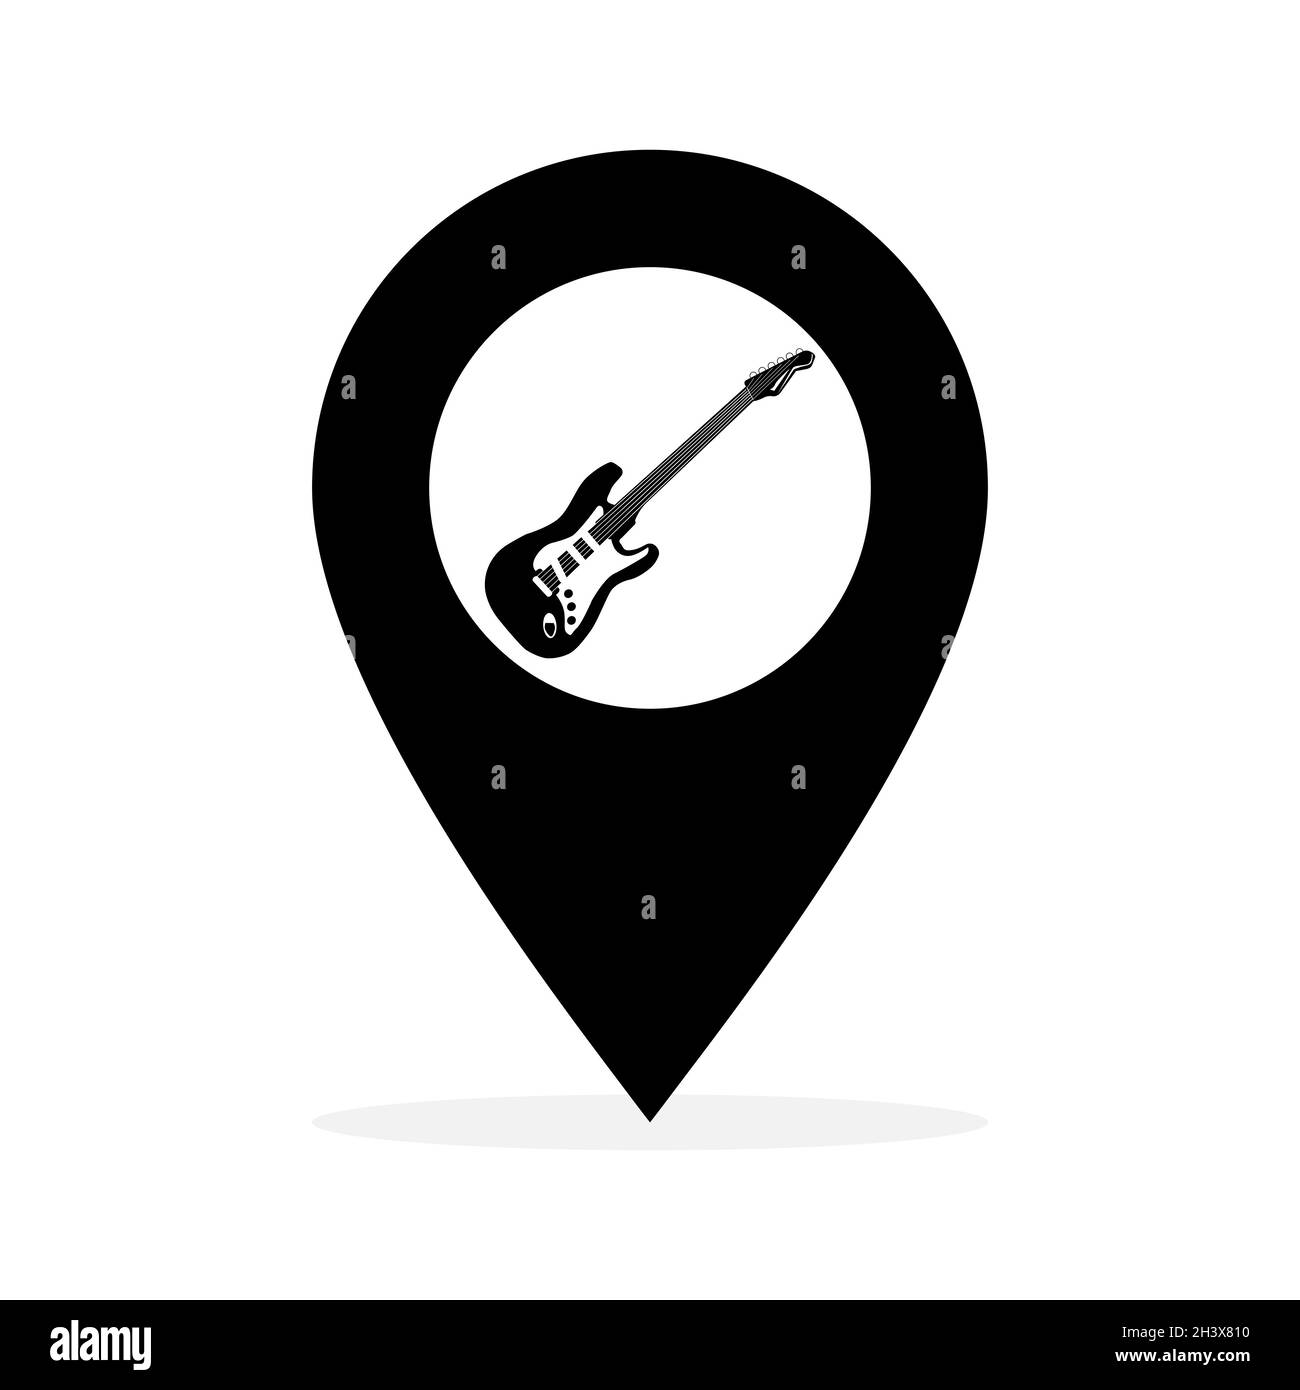 Icône d'instrument de musique de guitare électrique sur la carte repère d'emplacement. Symbole de broche d'emplacement. Illustration vectorielle isolée sur fond blanc. Illustration de Vecteur